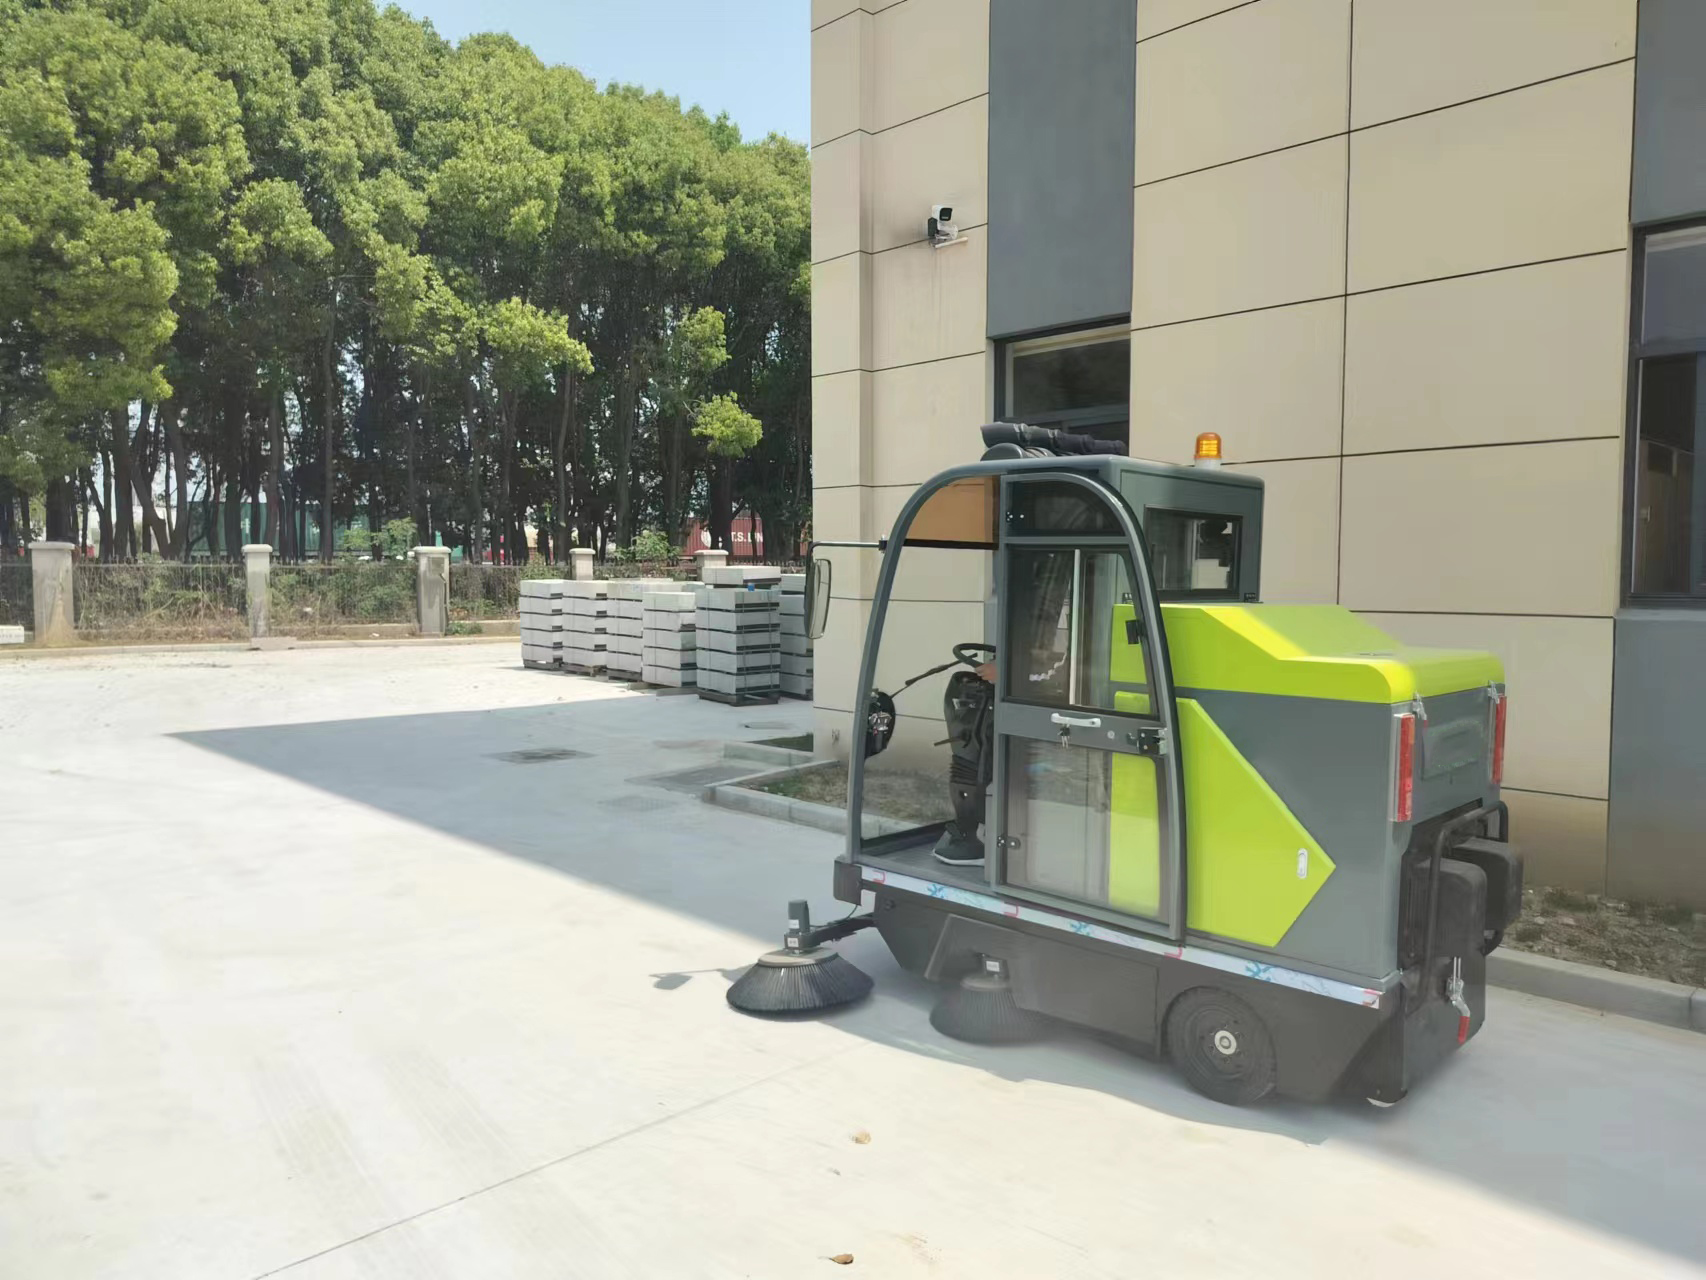 环卫扫地车是一种新型的环保地面清洁设备